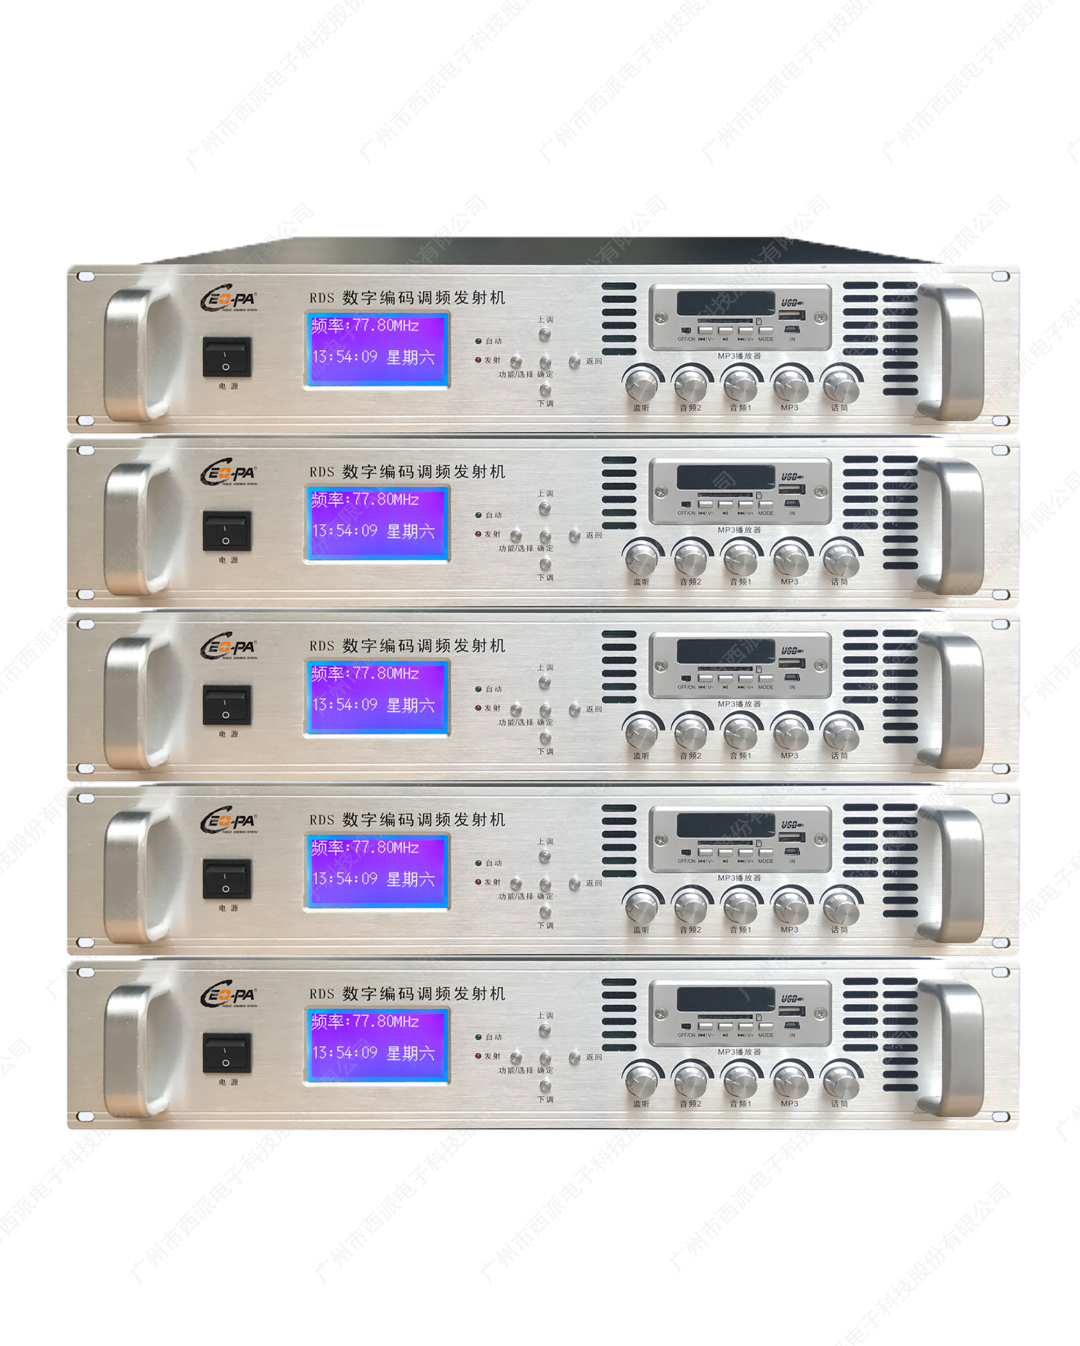 数字调频发射数码编码一体主机(含软件)30W-300W  CE-8162-CE-8167